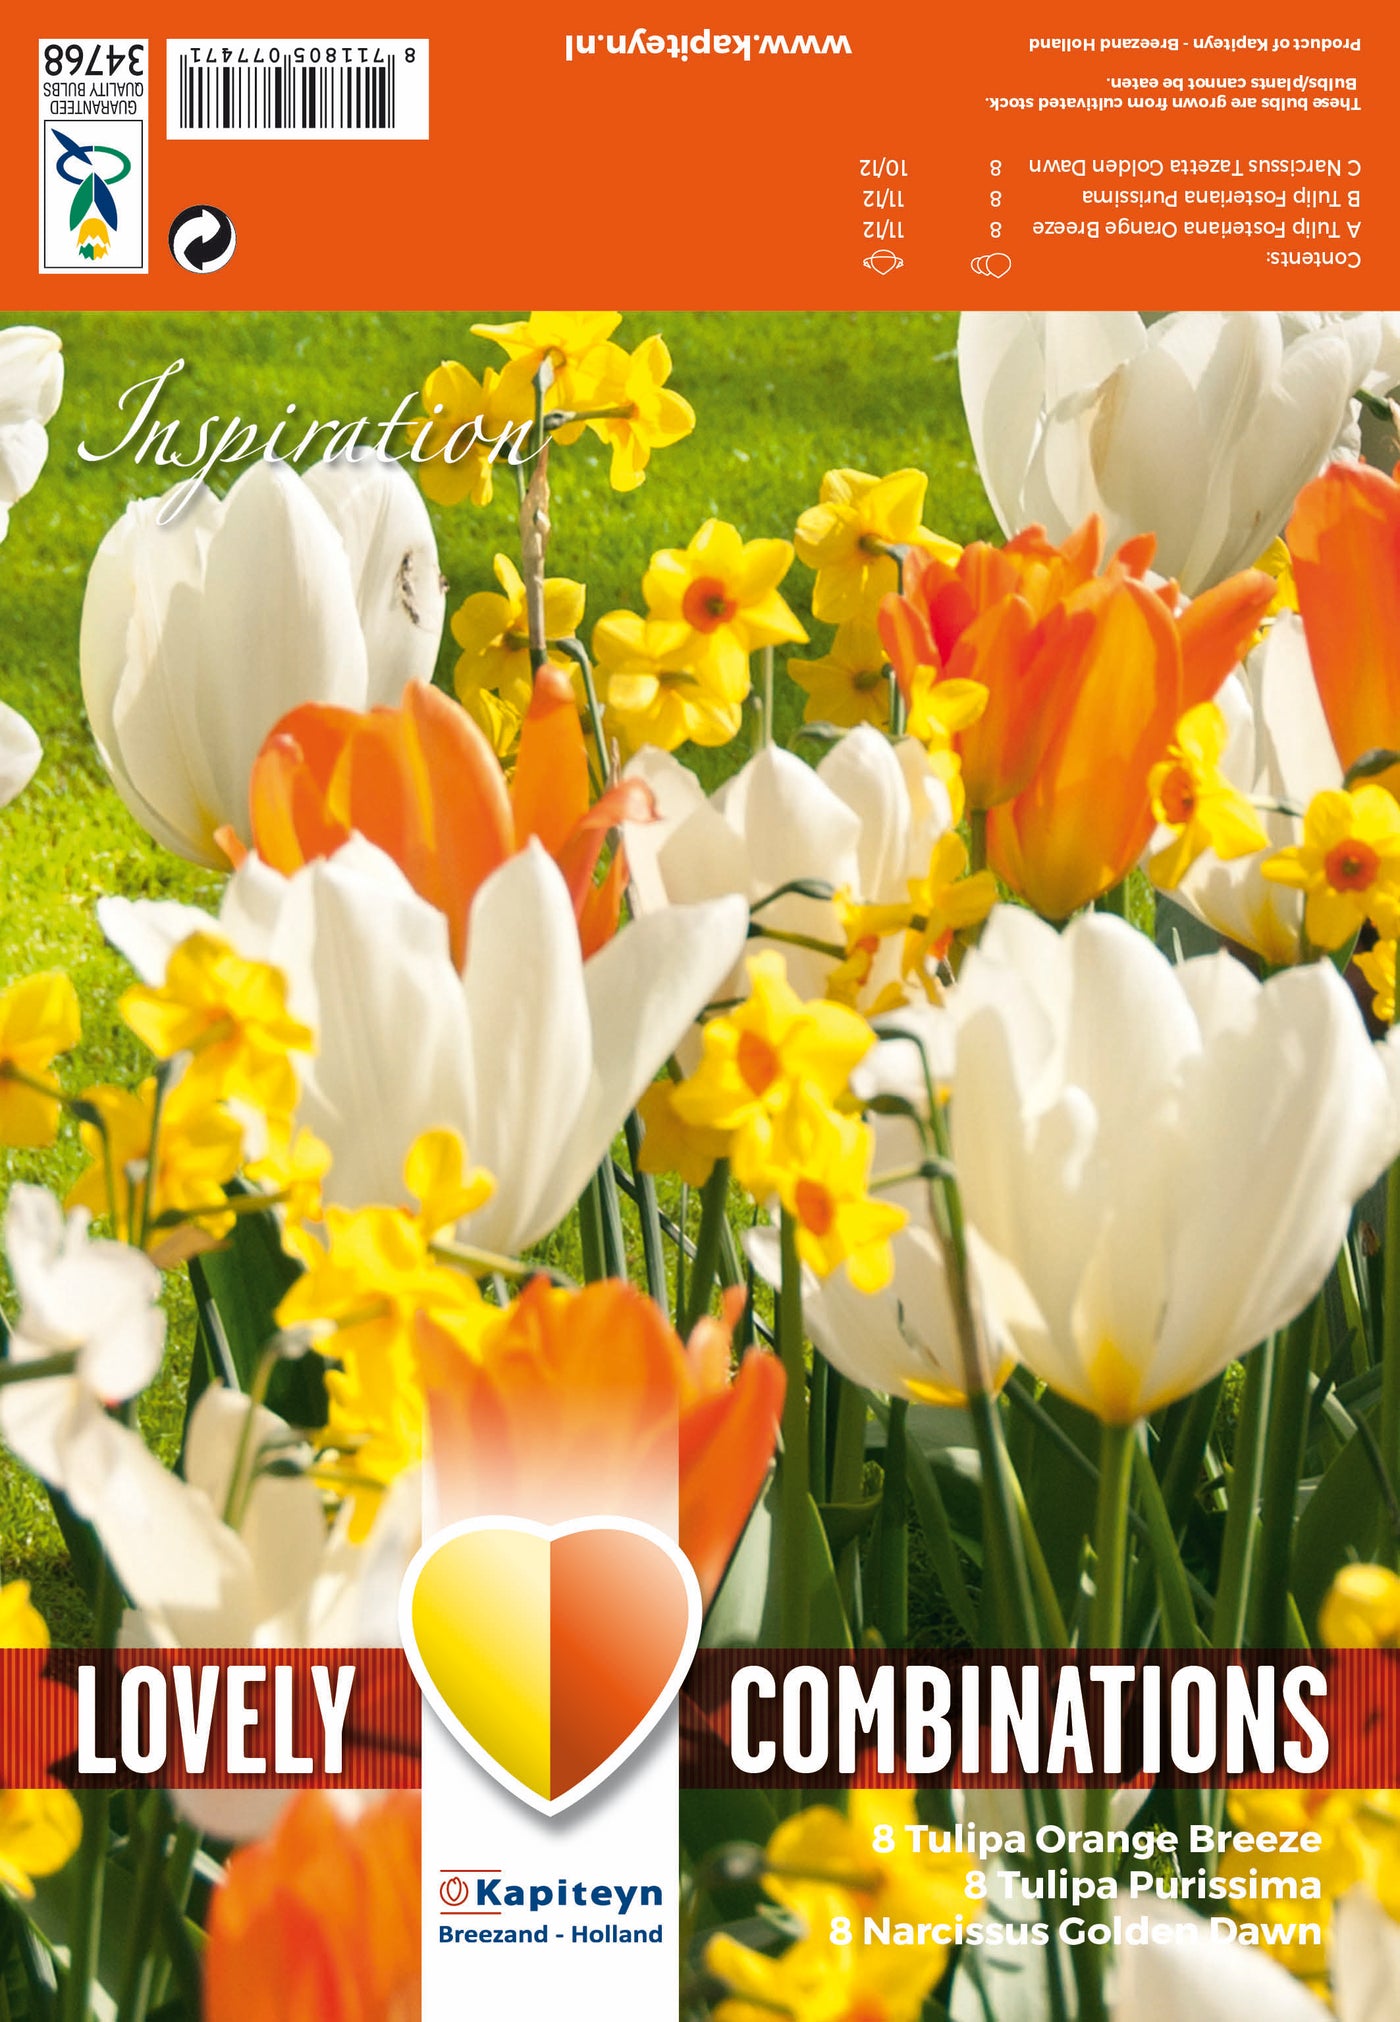 Combi Tulipa Orange/White & Narcissus Yellow